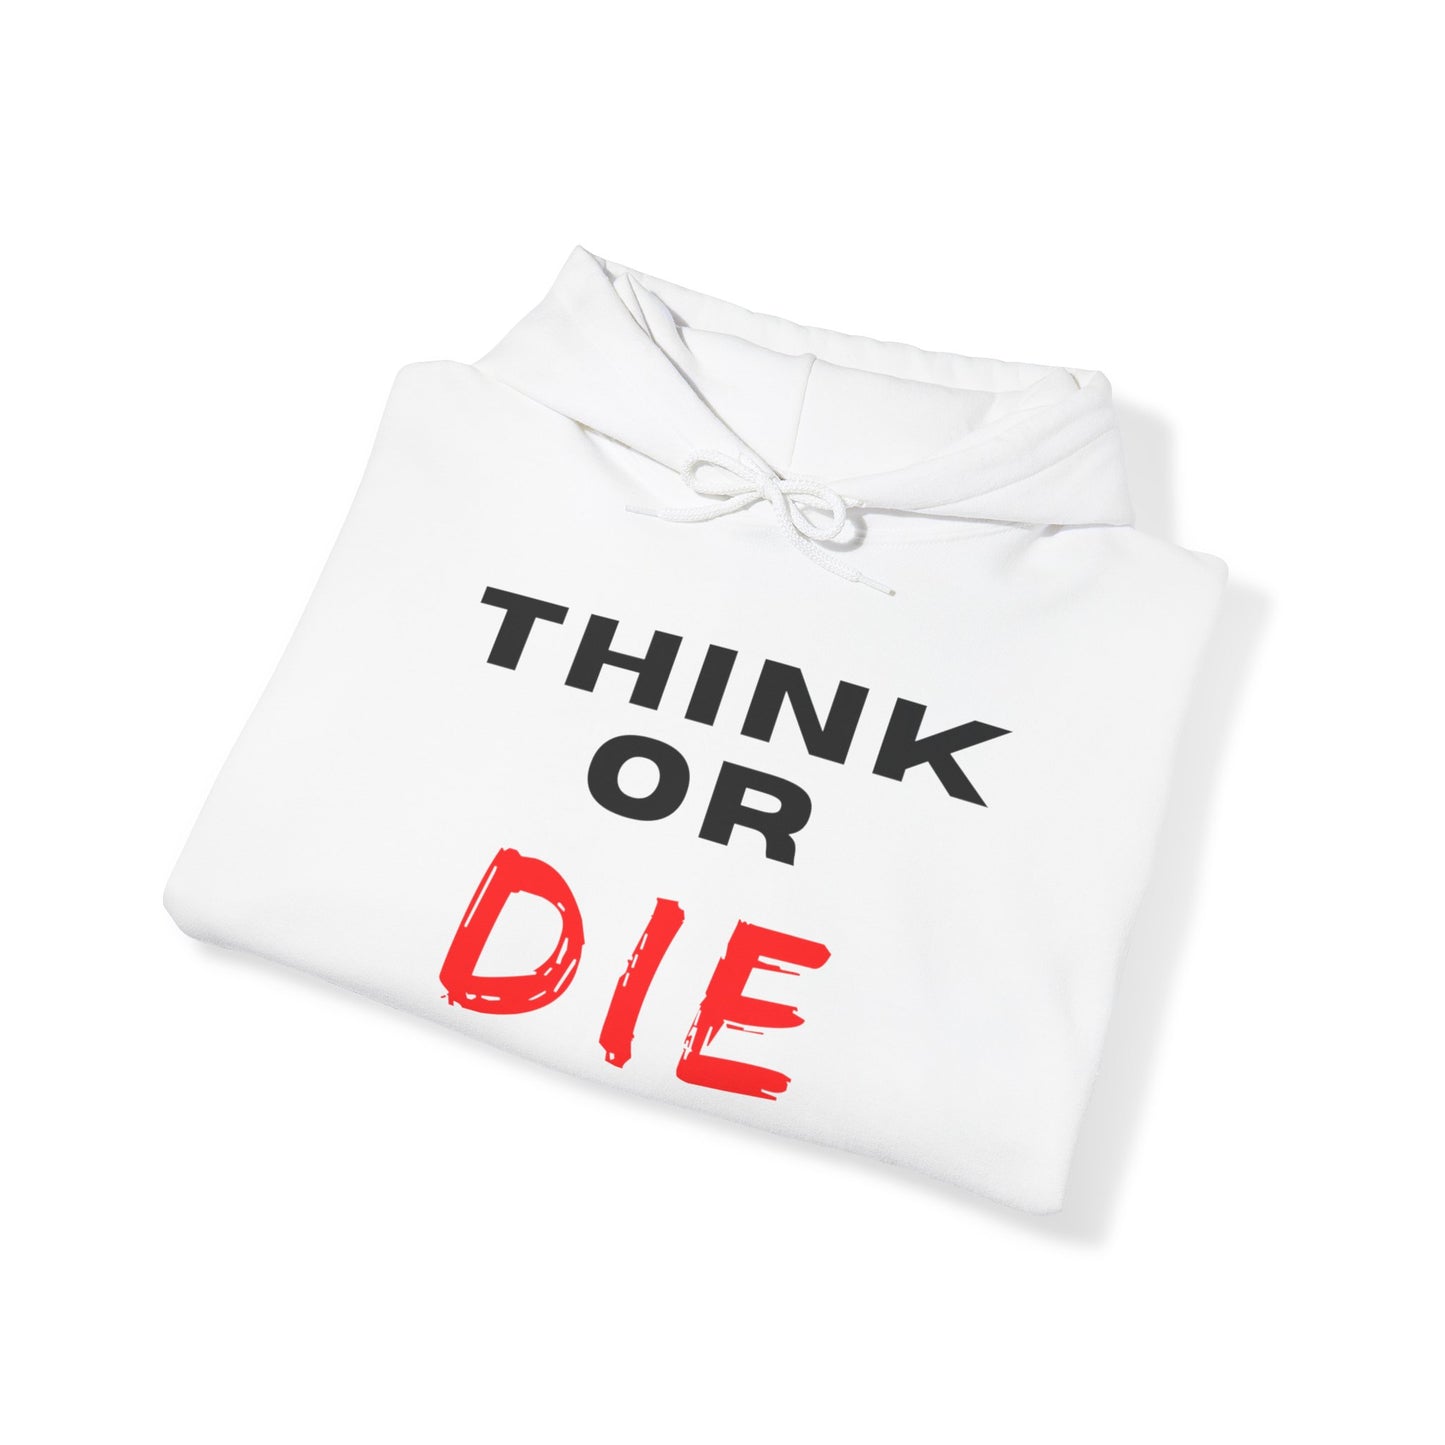 Think Or Die, Unisex Heavy Blend™ Hooded Sweatshirt